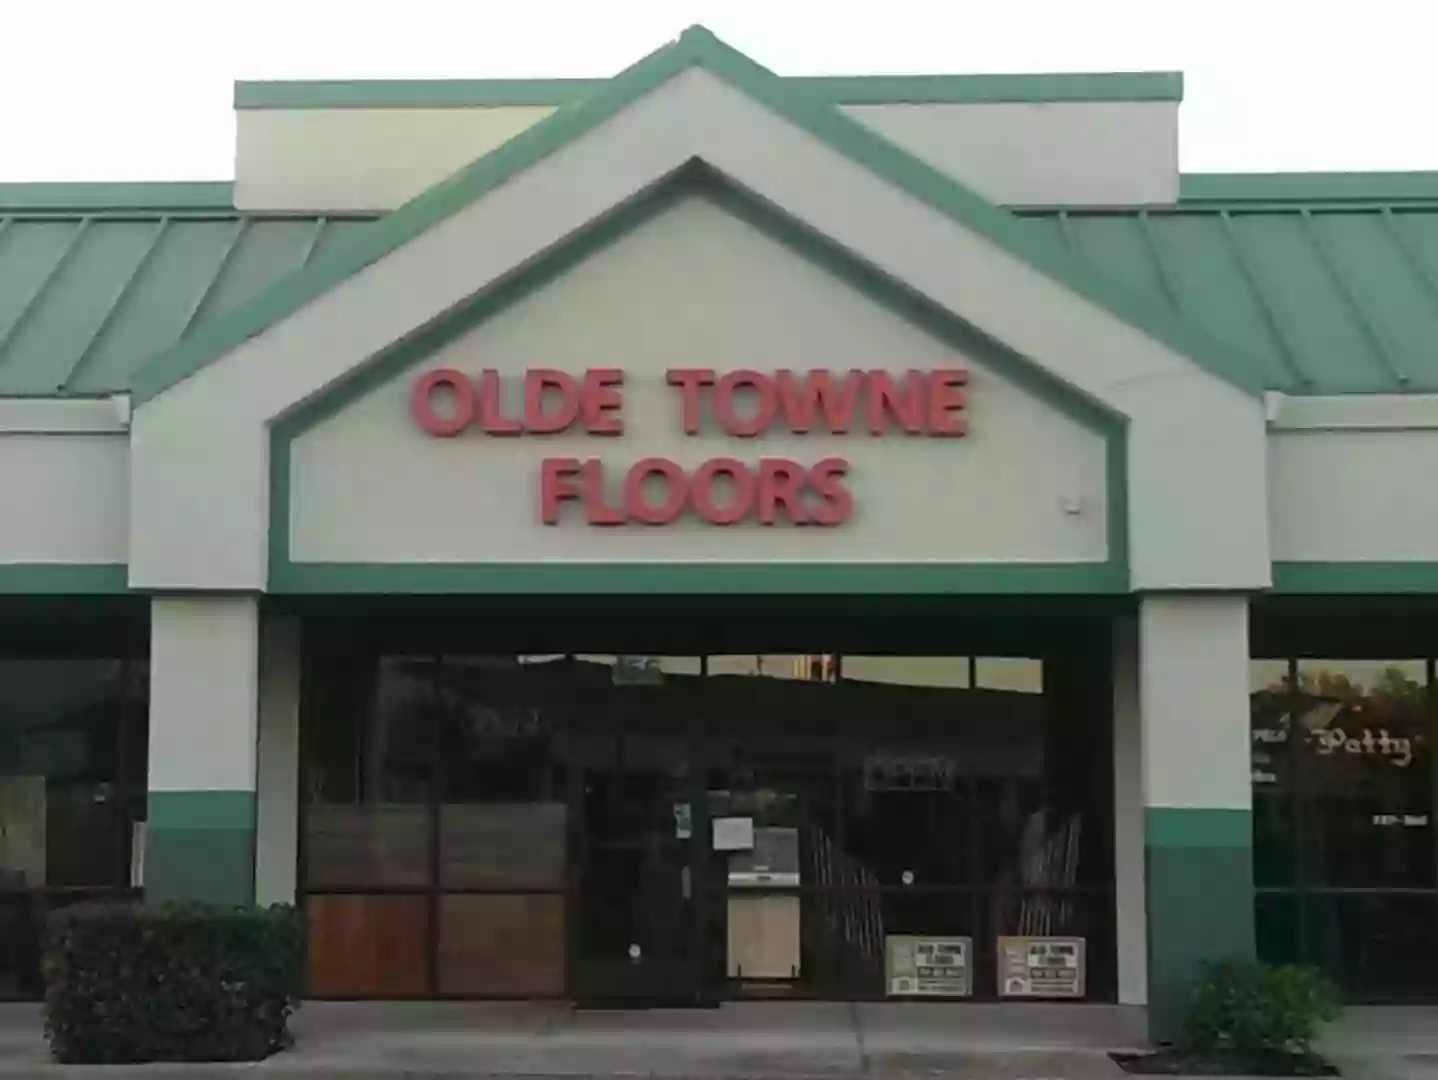 Olde Towne Floors